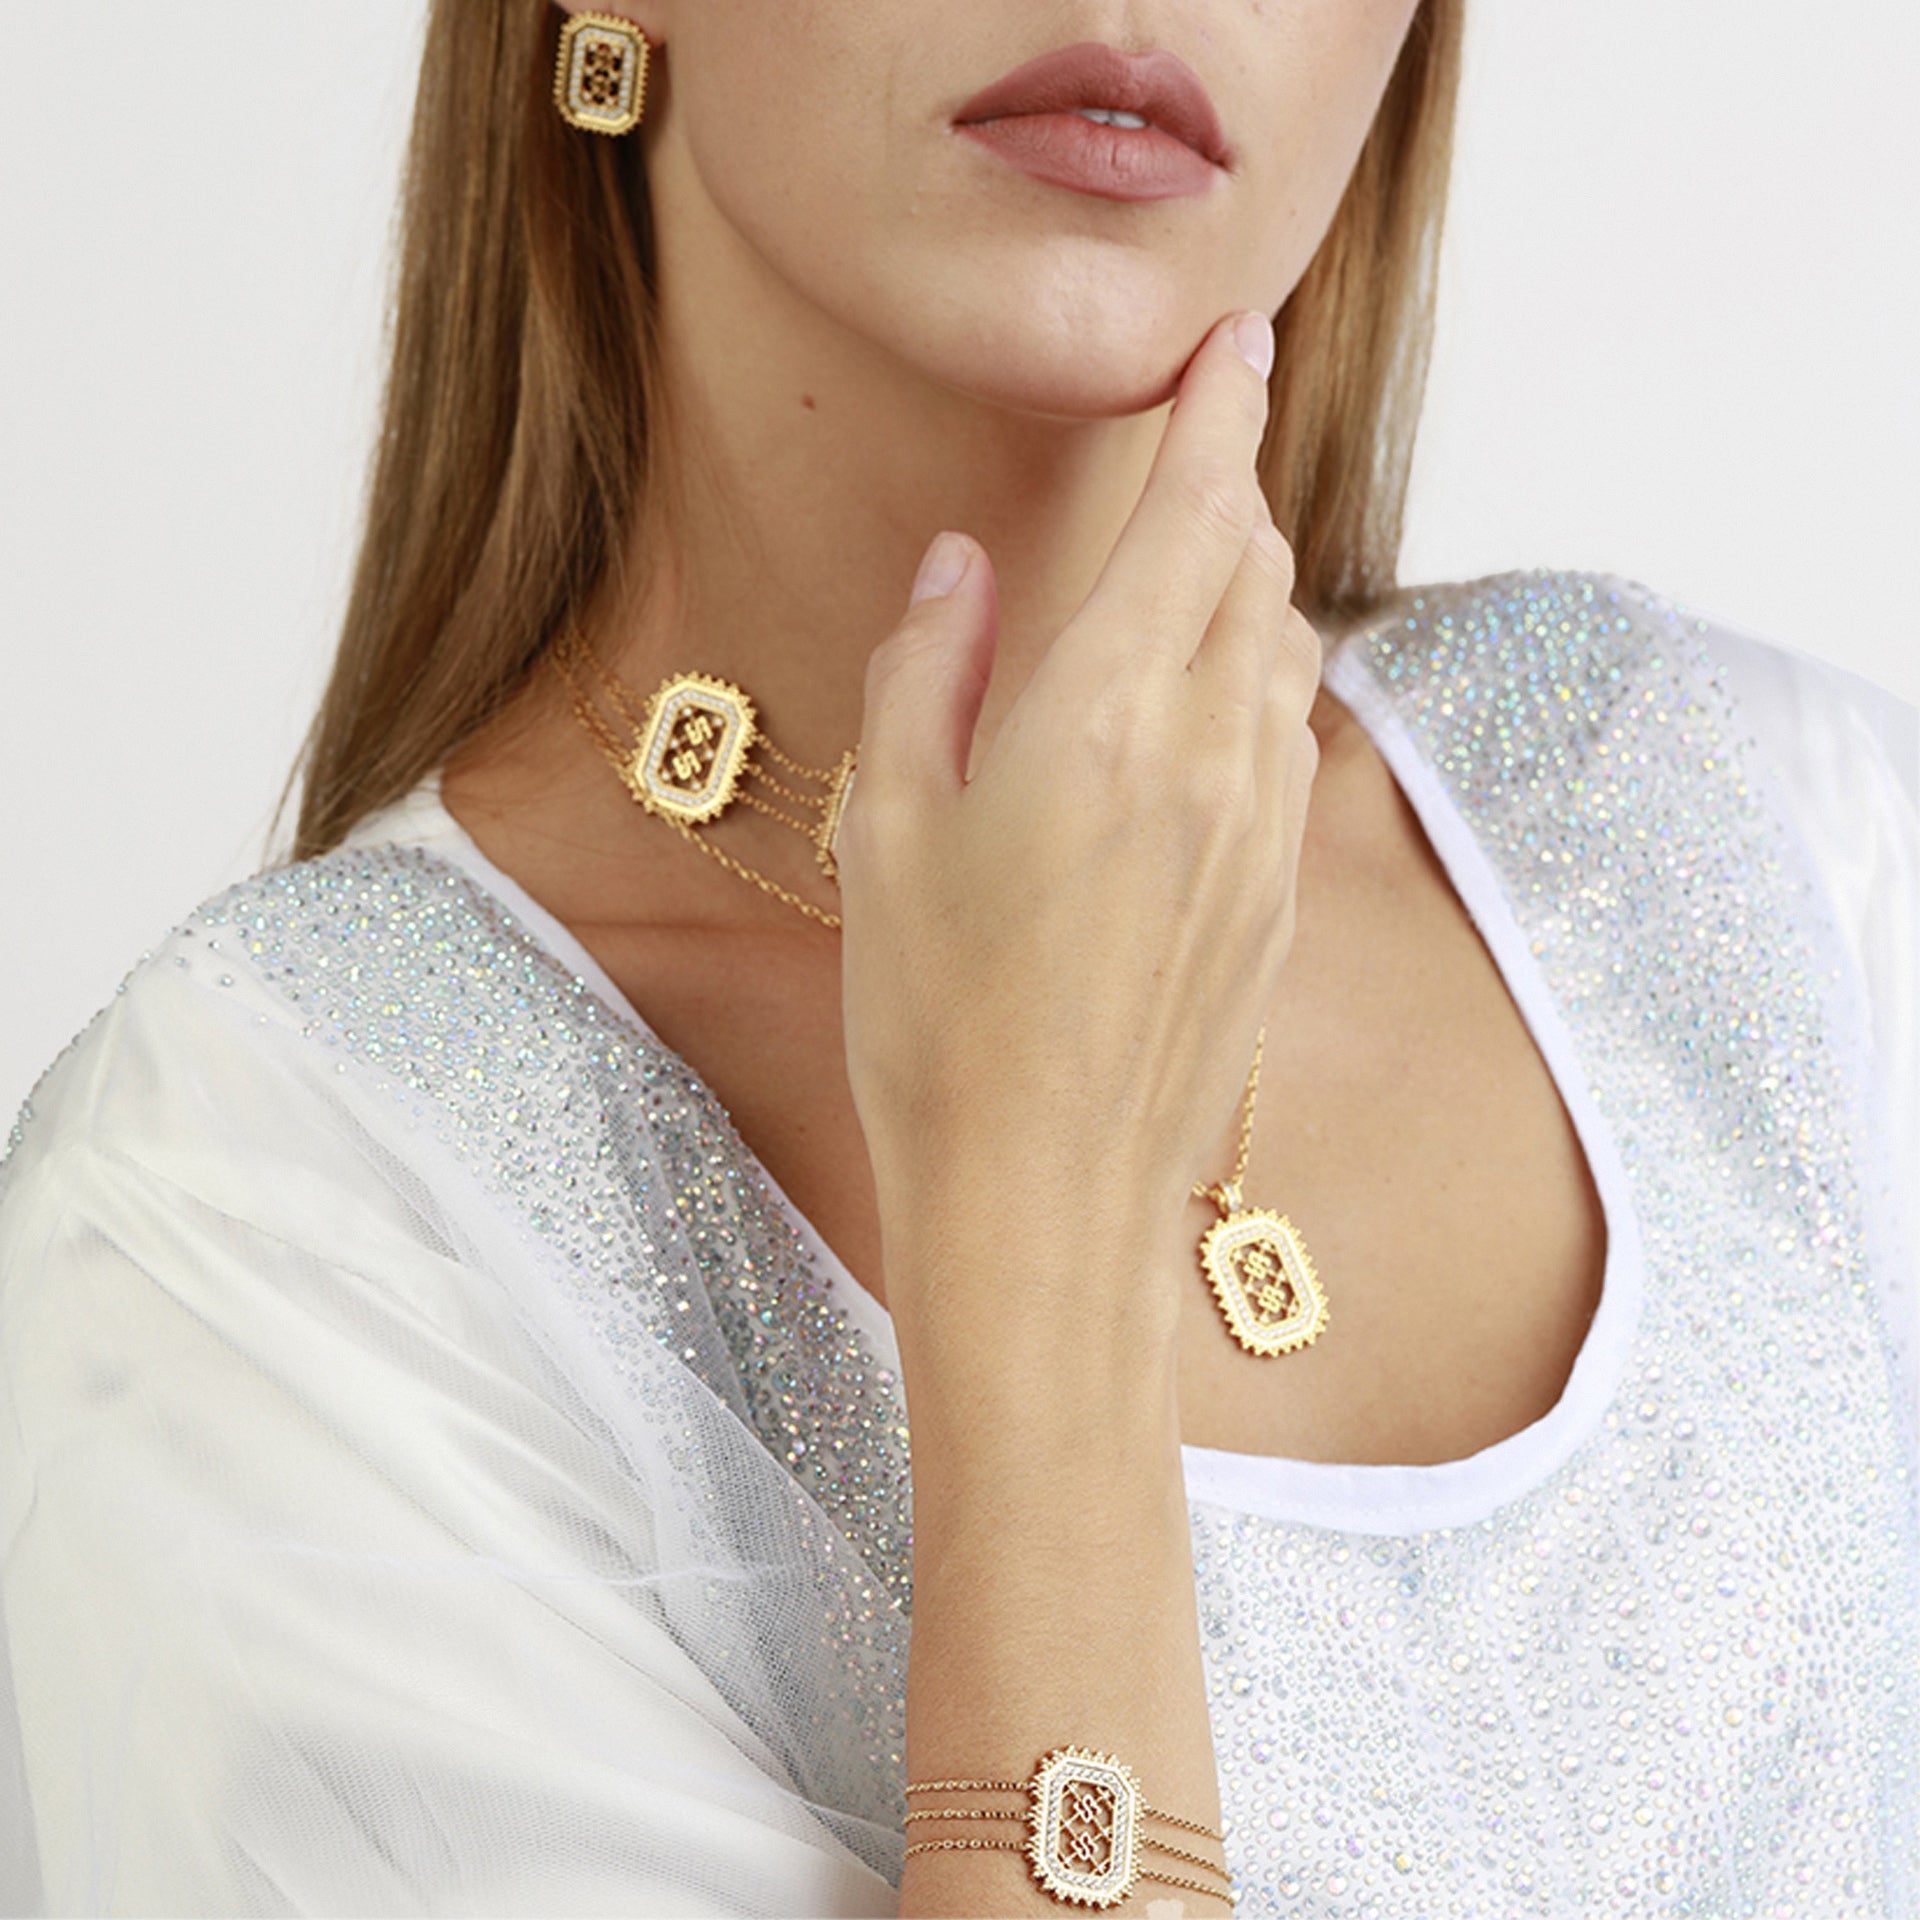 Ritaj Gold Earrings From Le-Soleil